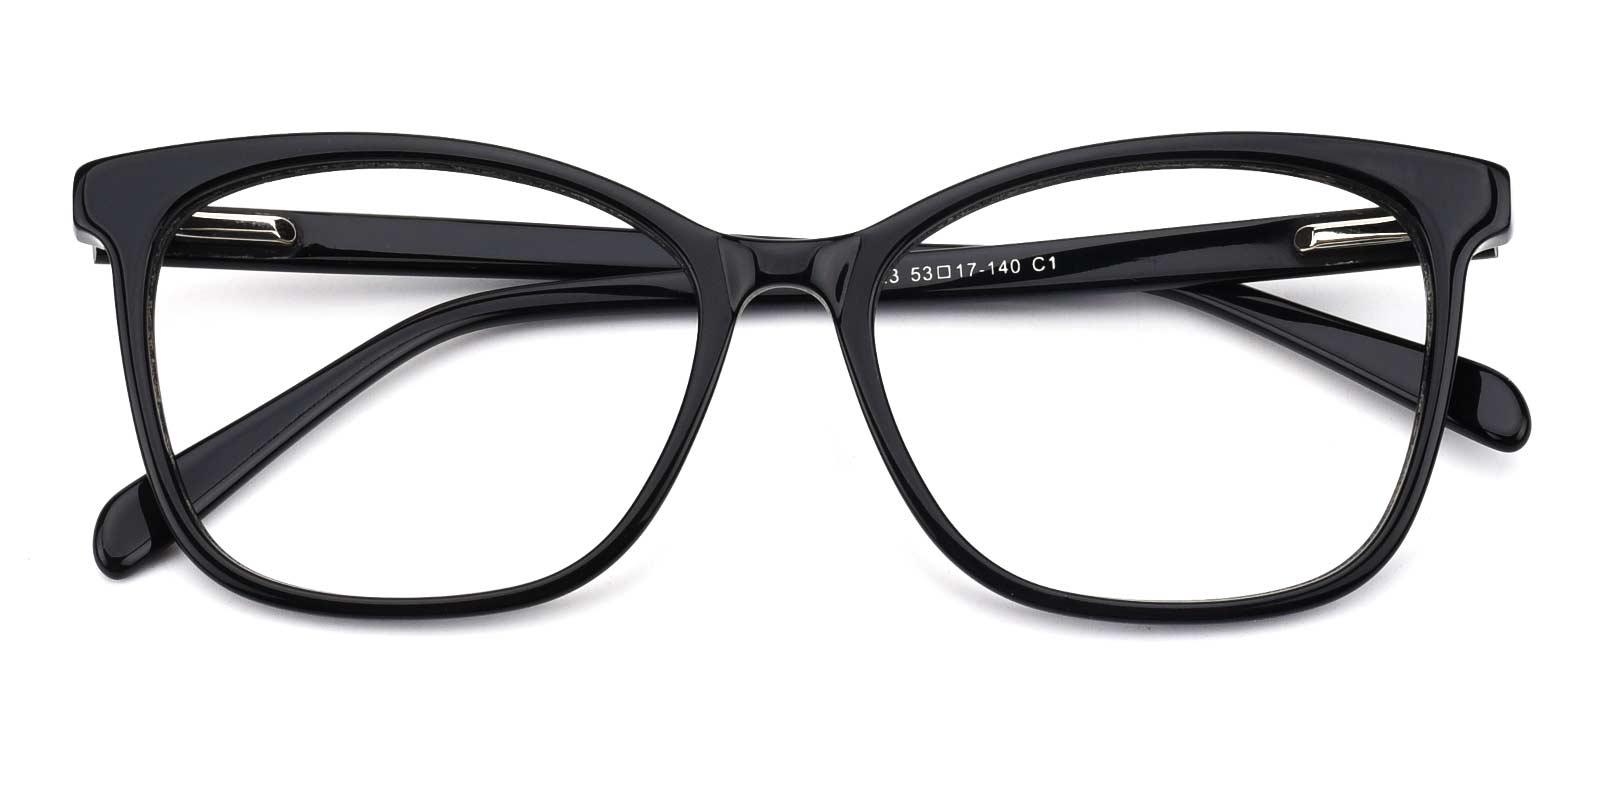 Poppy-Black-Cat / Rectangle-Acetate-Eyeglasses-detail